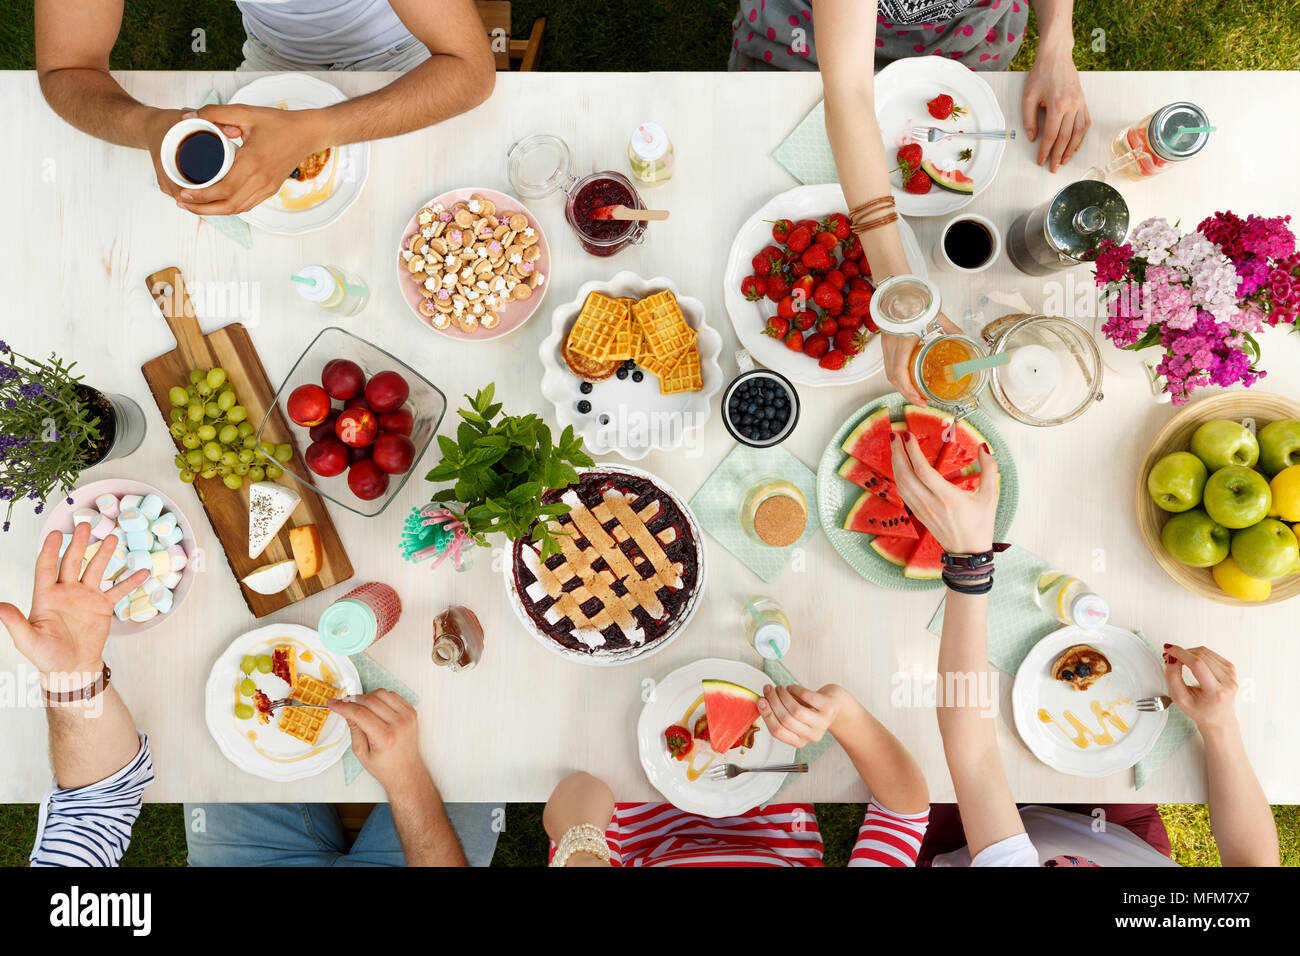 Gli studenti di mangiare un pasto sano all'aperto su un tavolo bianco e avere un buon tempo Foto Stock